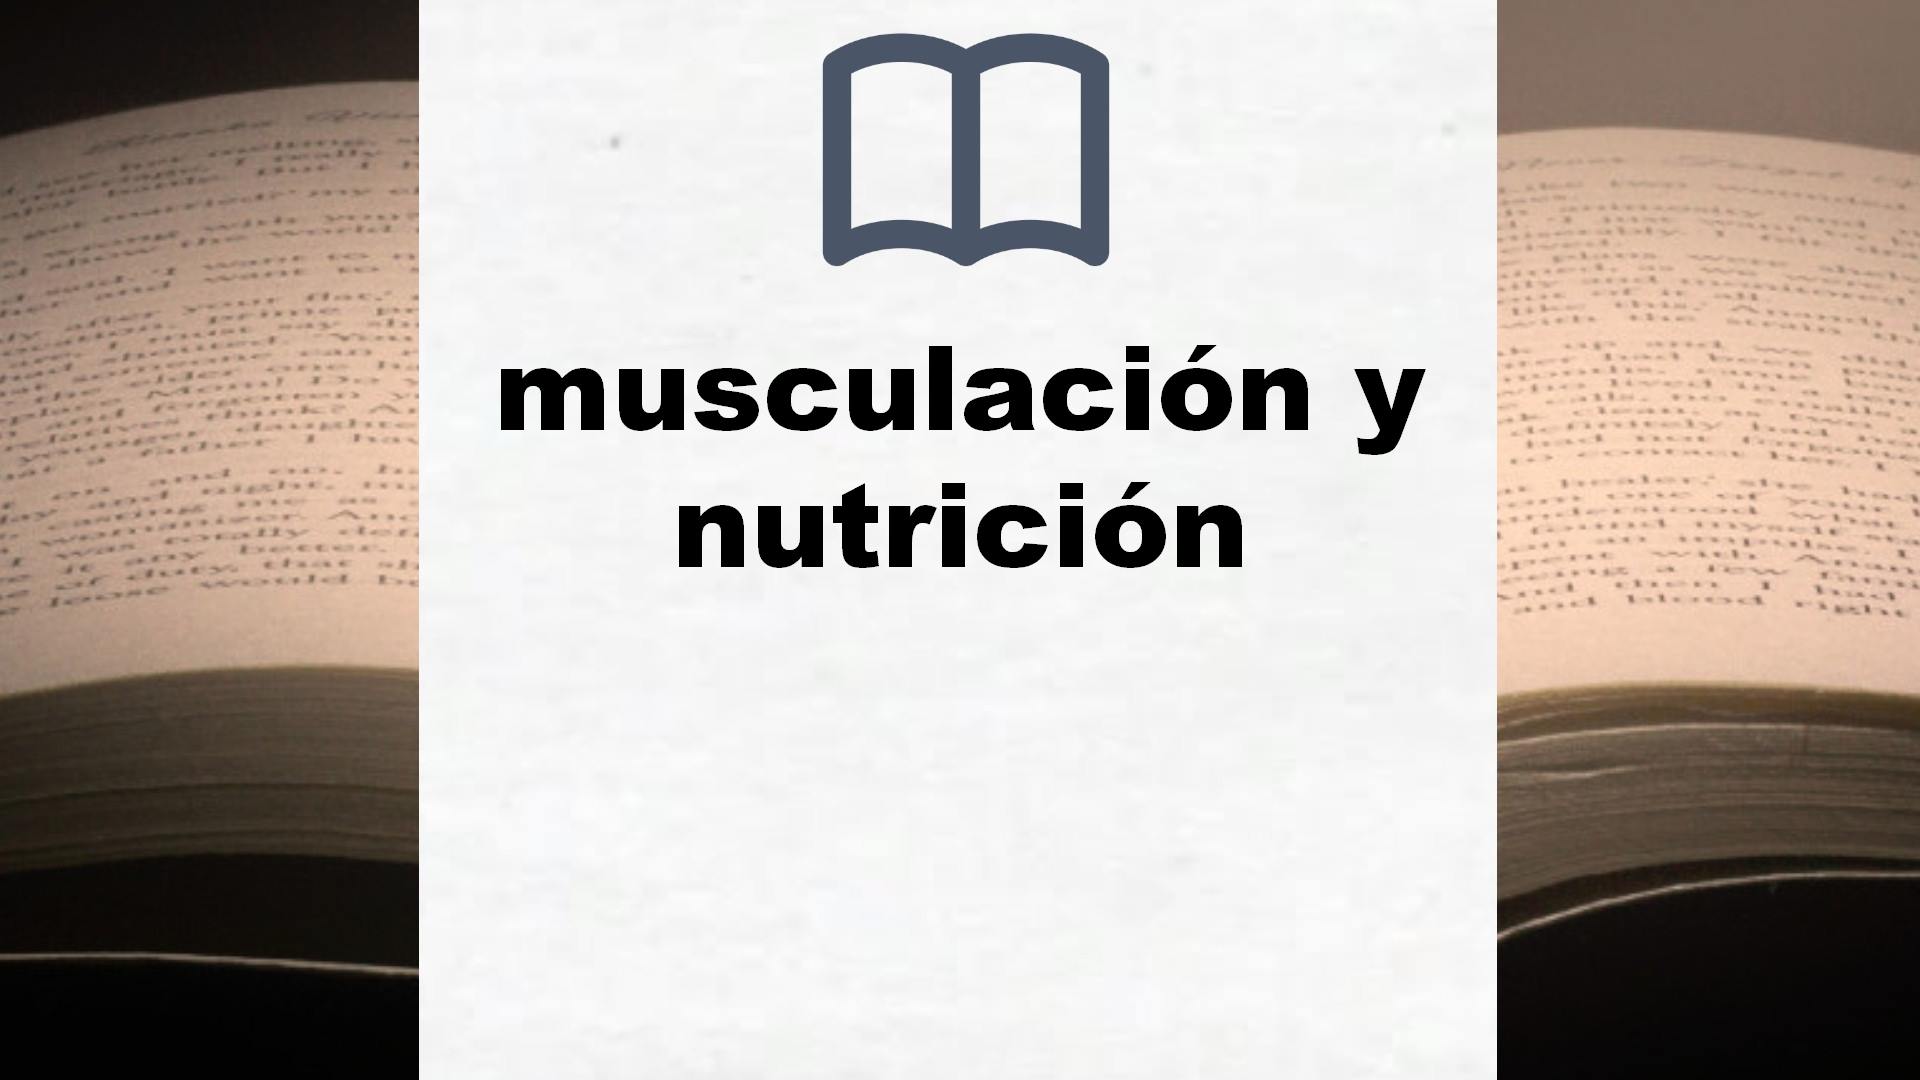 Libros sobre musculación y nutrición